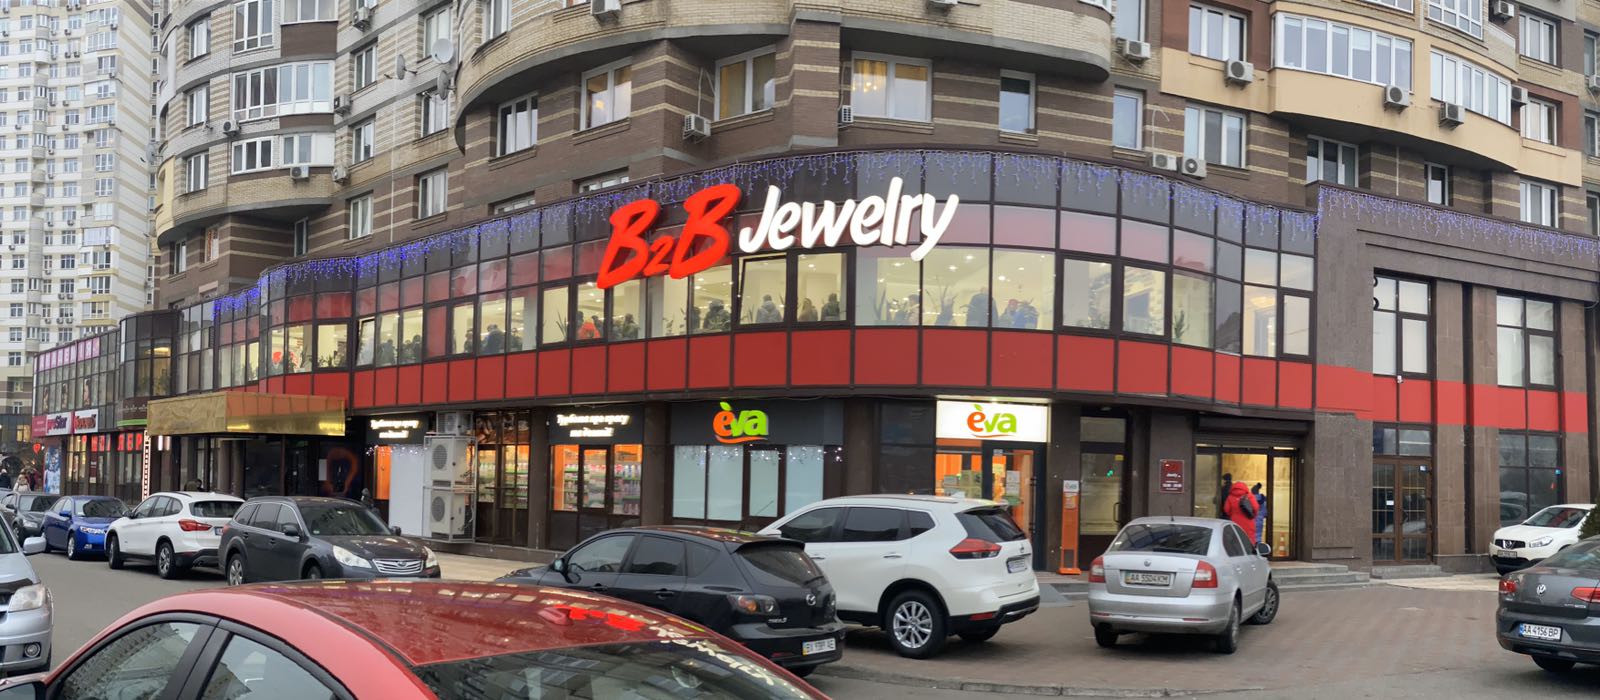 В Алматы пресечена деятельность финансовой пирамиды "В2В Jewelry"